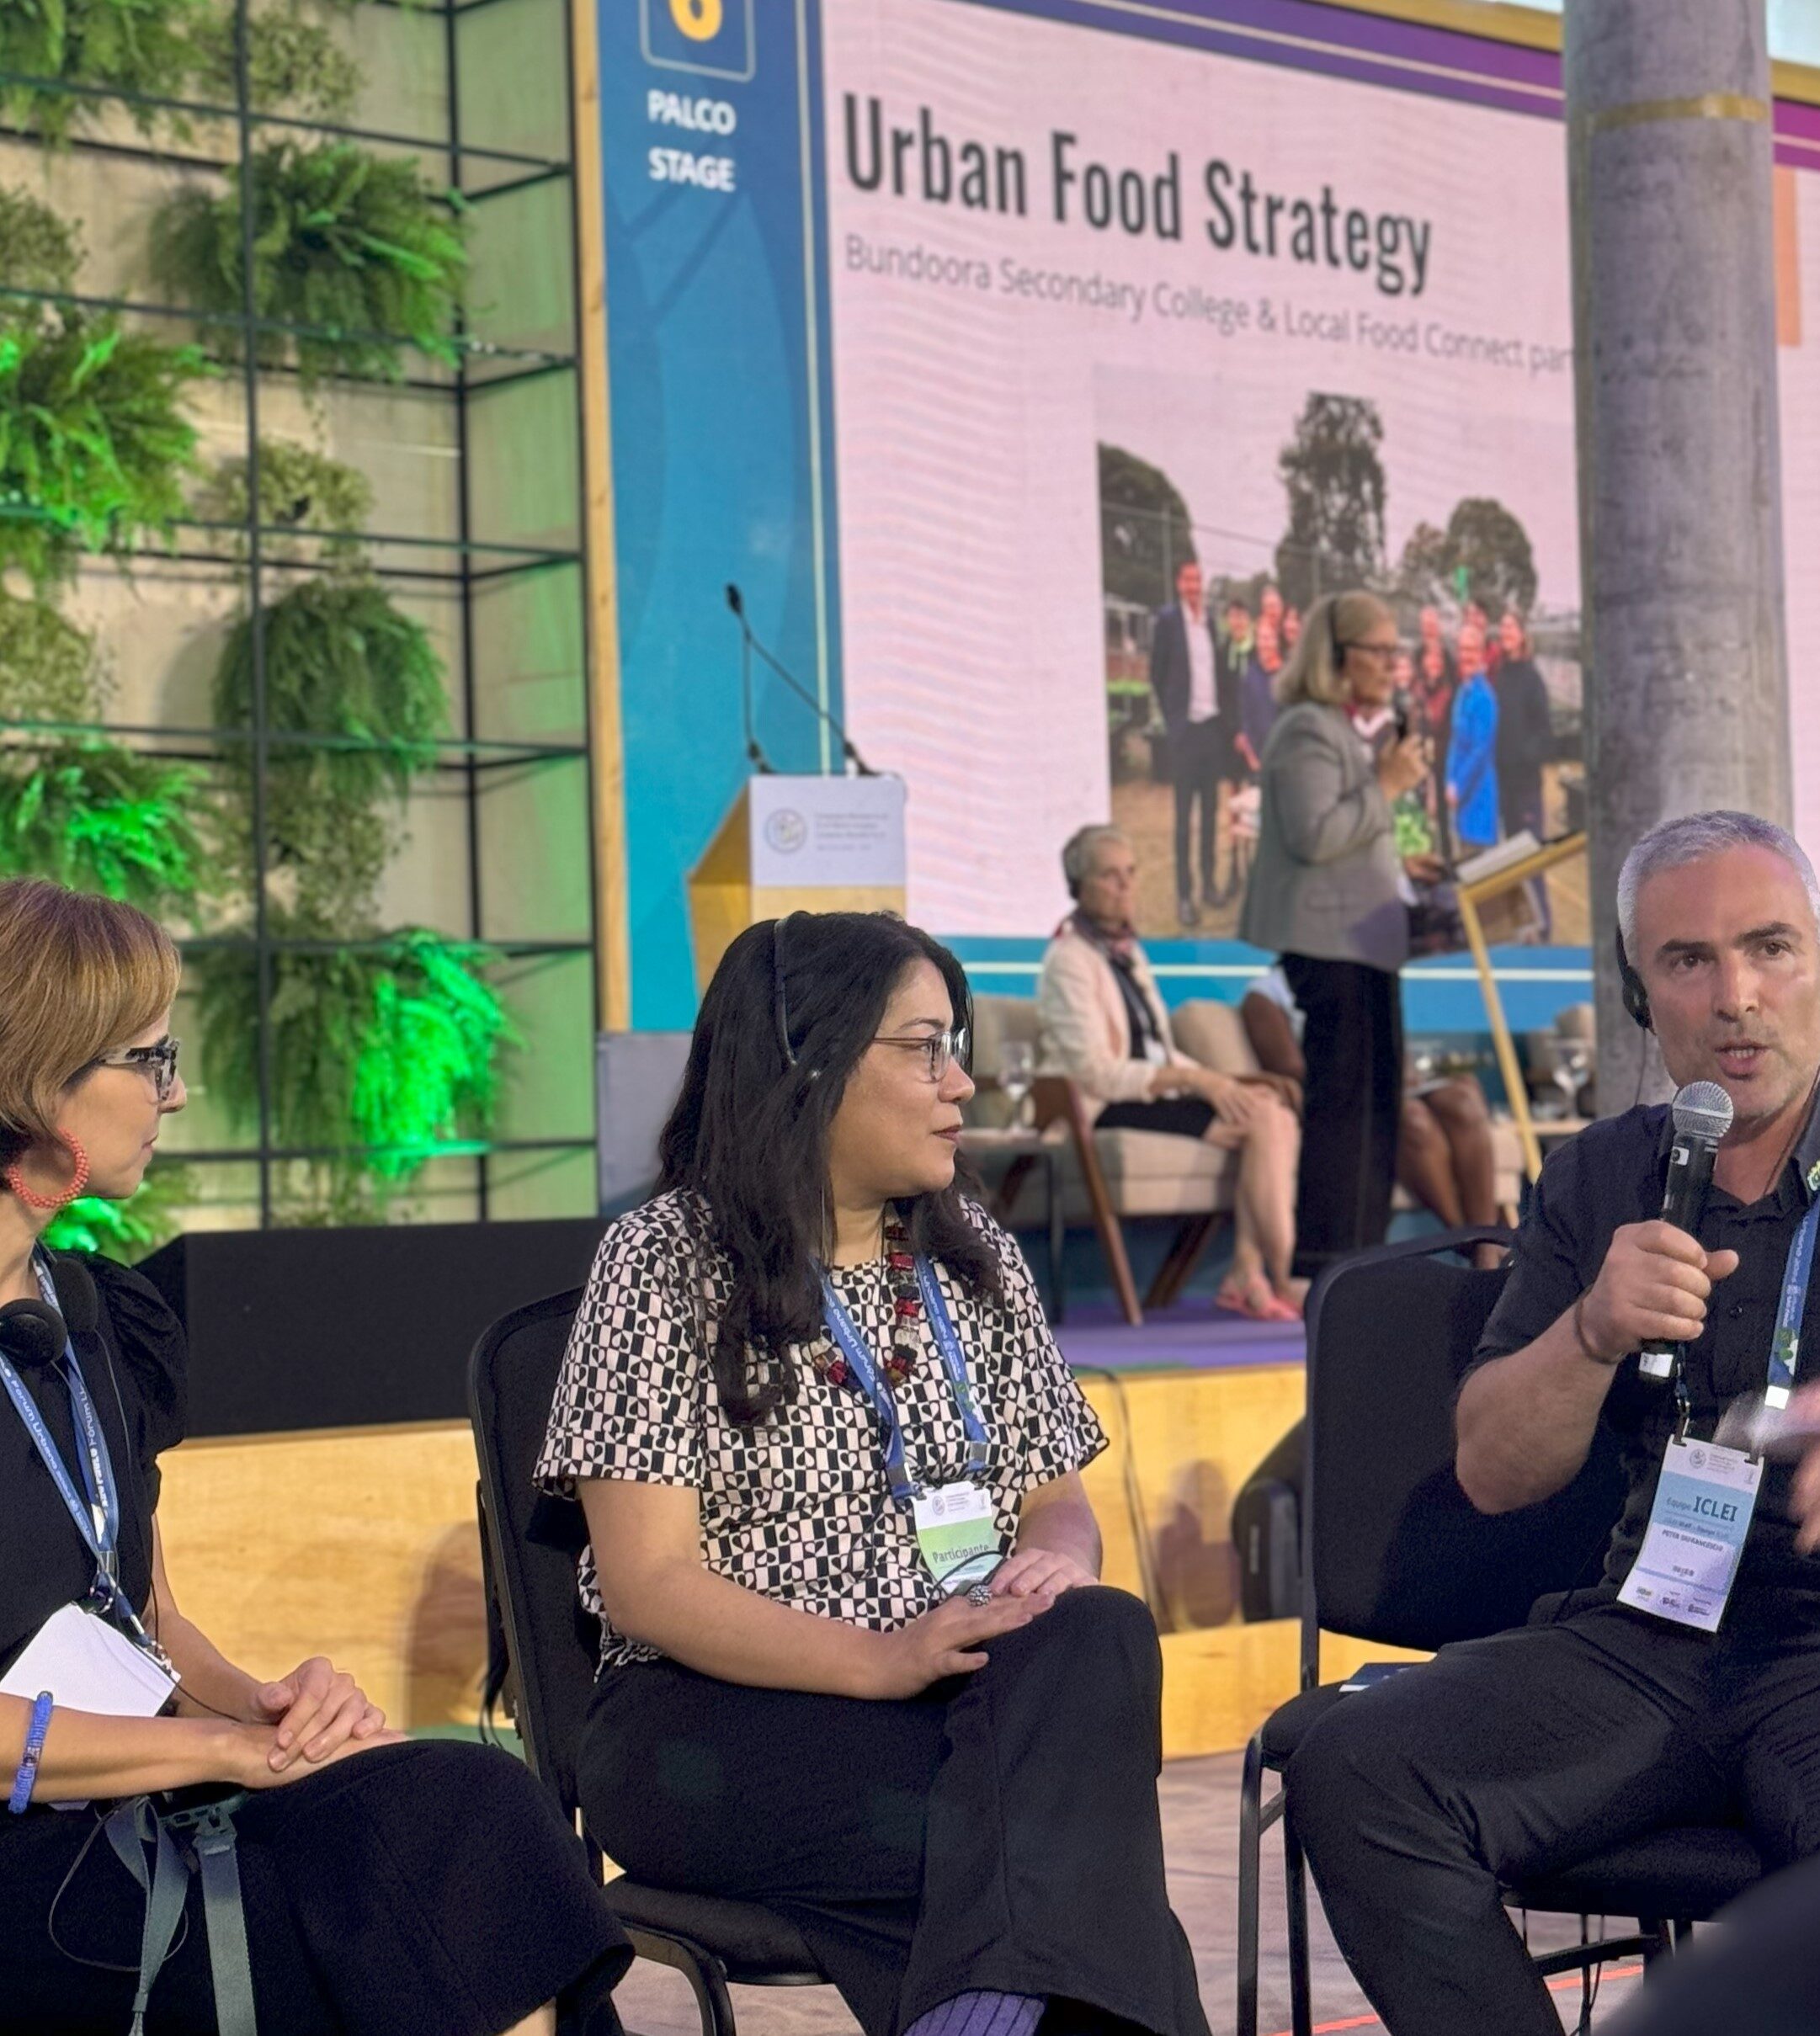 A importância do investimento em sistemas alimentares sustentáveis para cidades mais resilientes